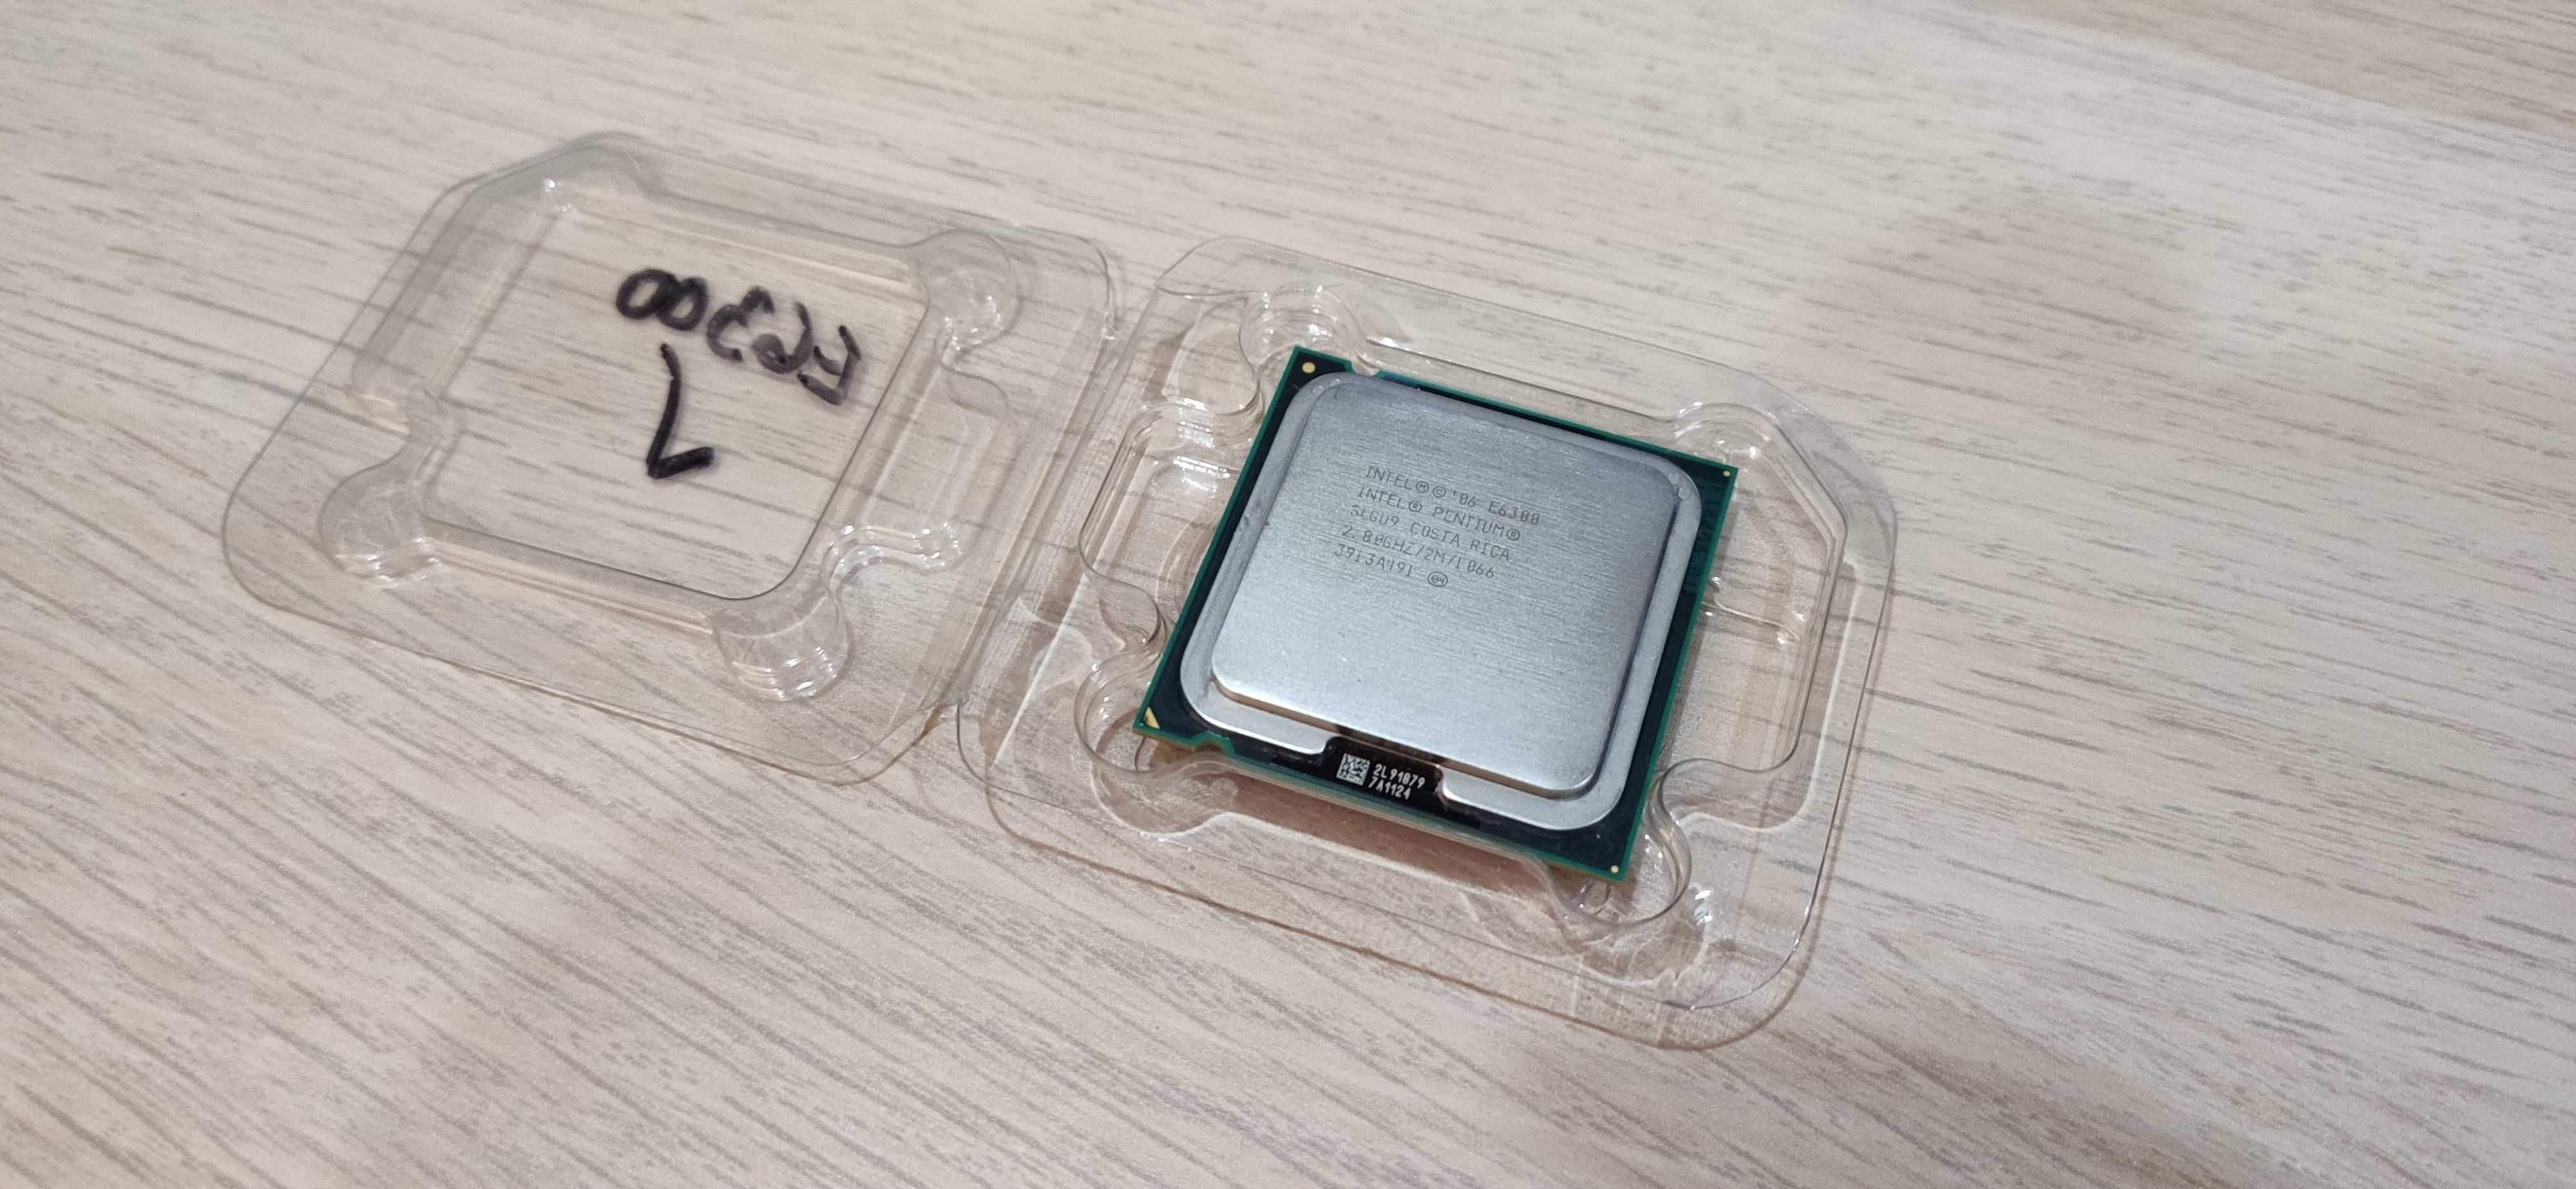 Processador Intel Core 2 Duo E6300 Socket 775